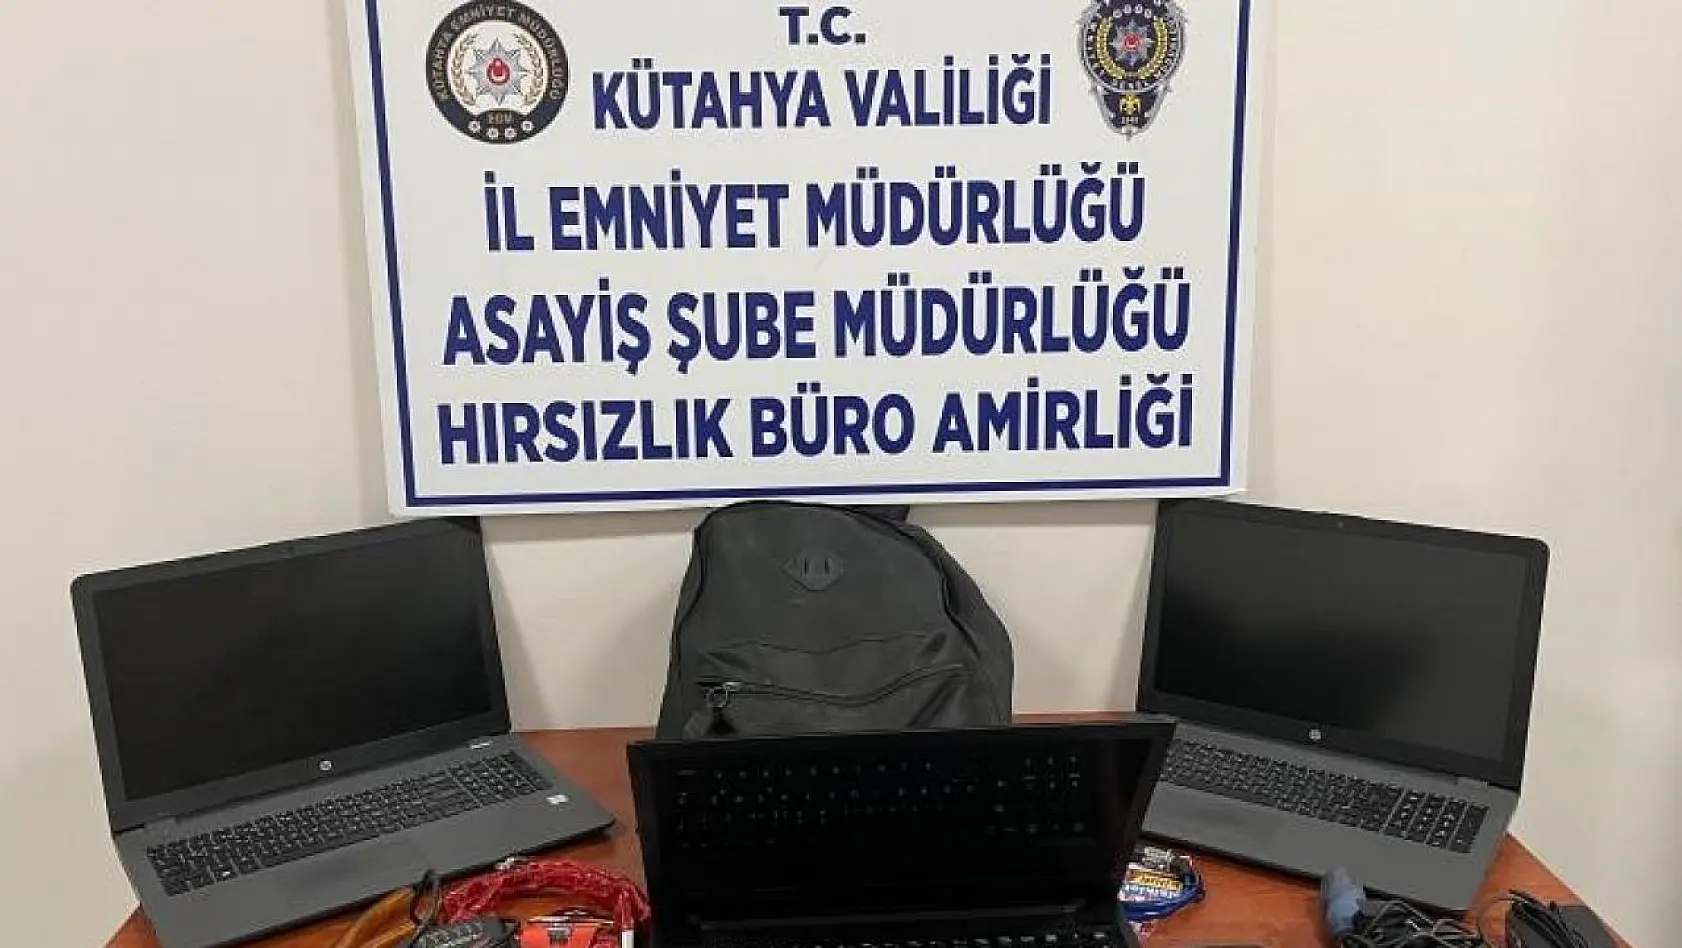 Çeşitli okullardan bilgisayarların çalınması olaylarının faili Kütahya'da yakalandı